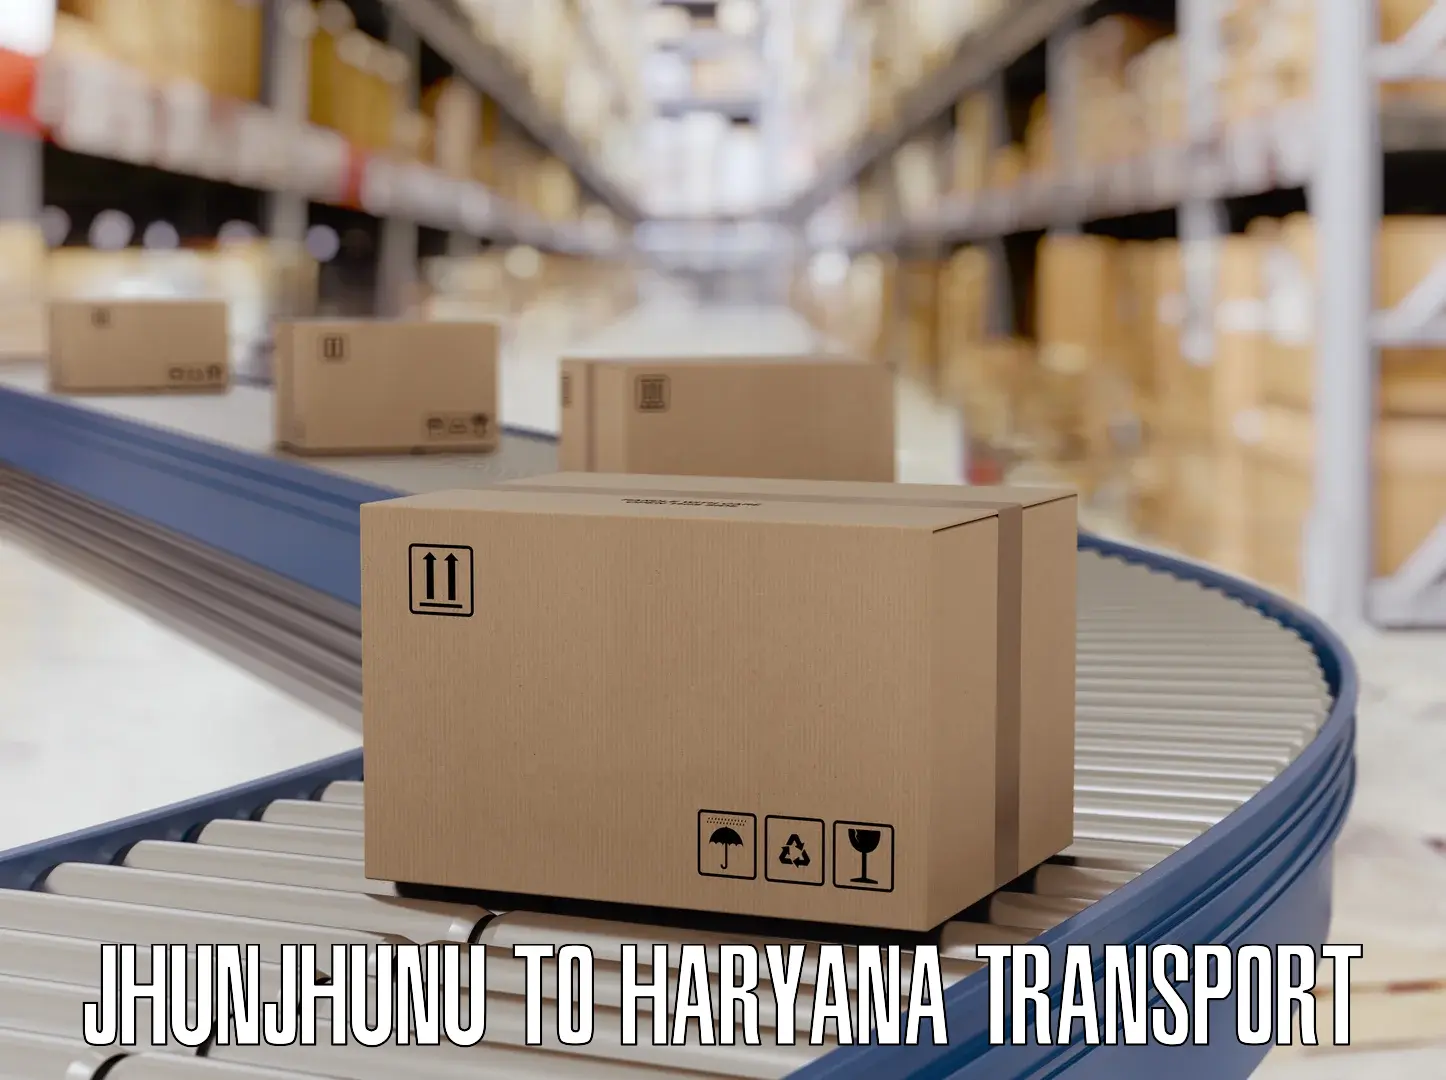 Container transport service Jhunjhunu to Bilaspur Haryana